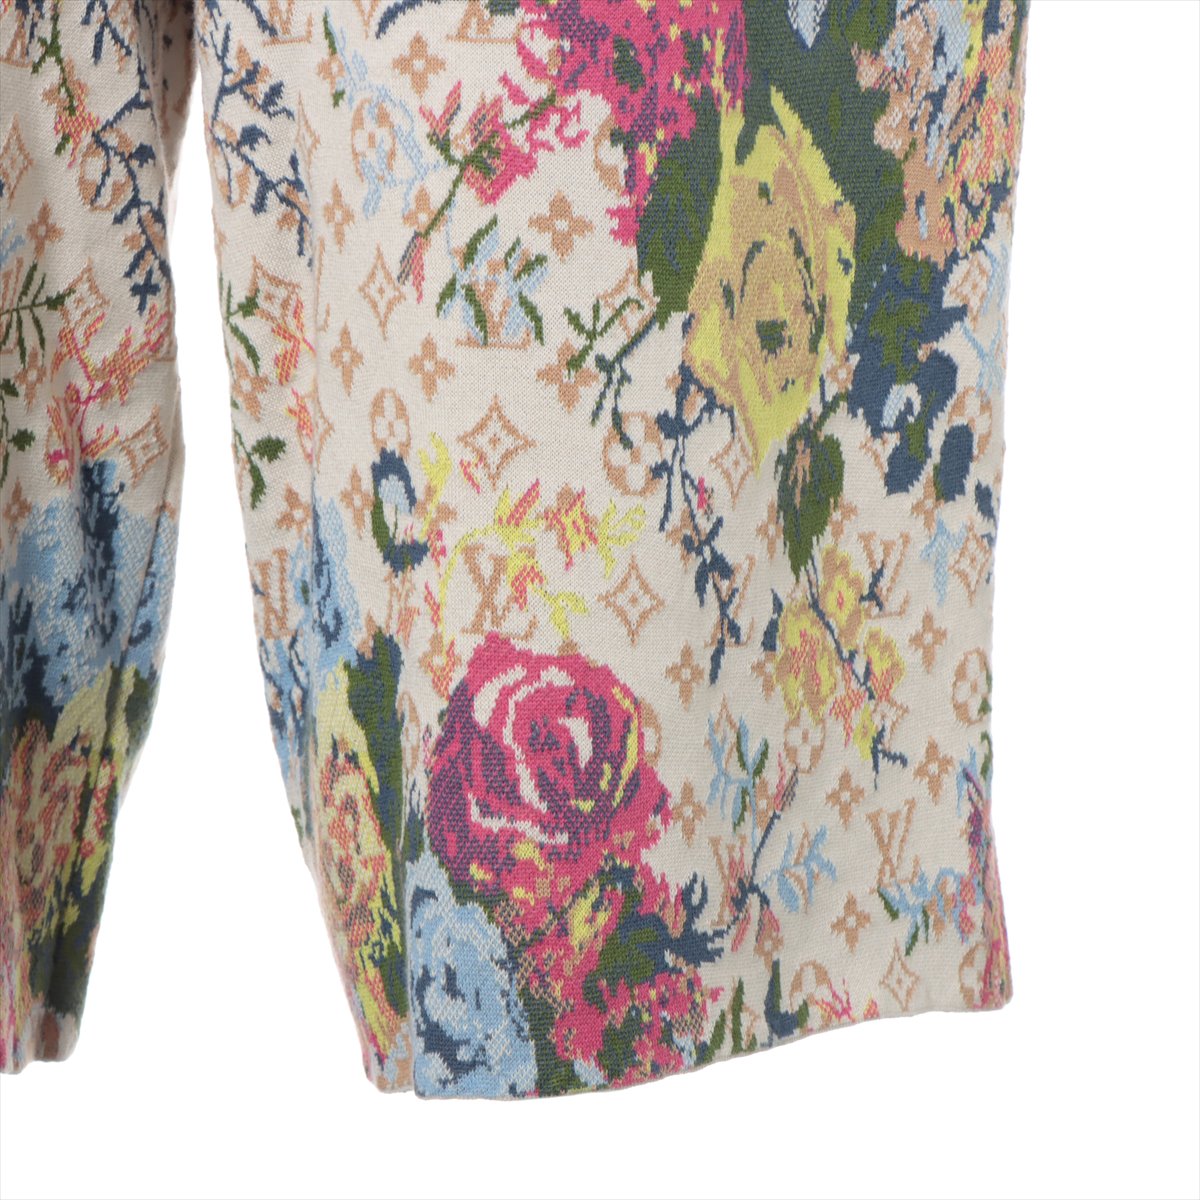 Louis Vuitton 22AW Cotton Short pants L Men's Multicolor  floral jacquard knit shorts RM222